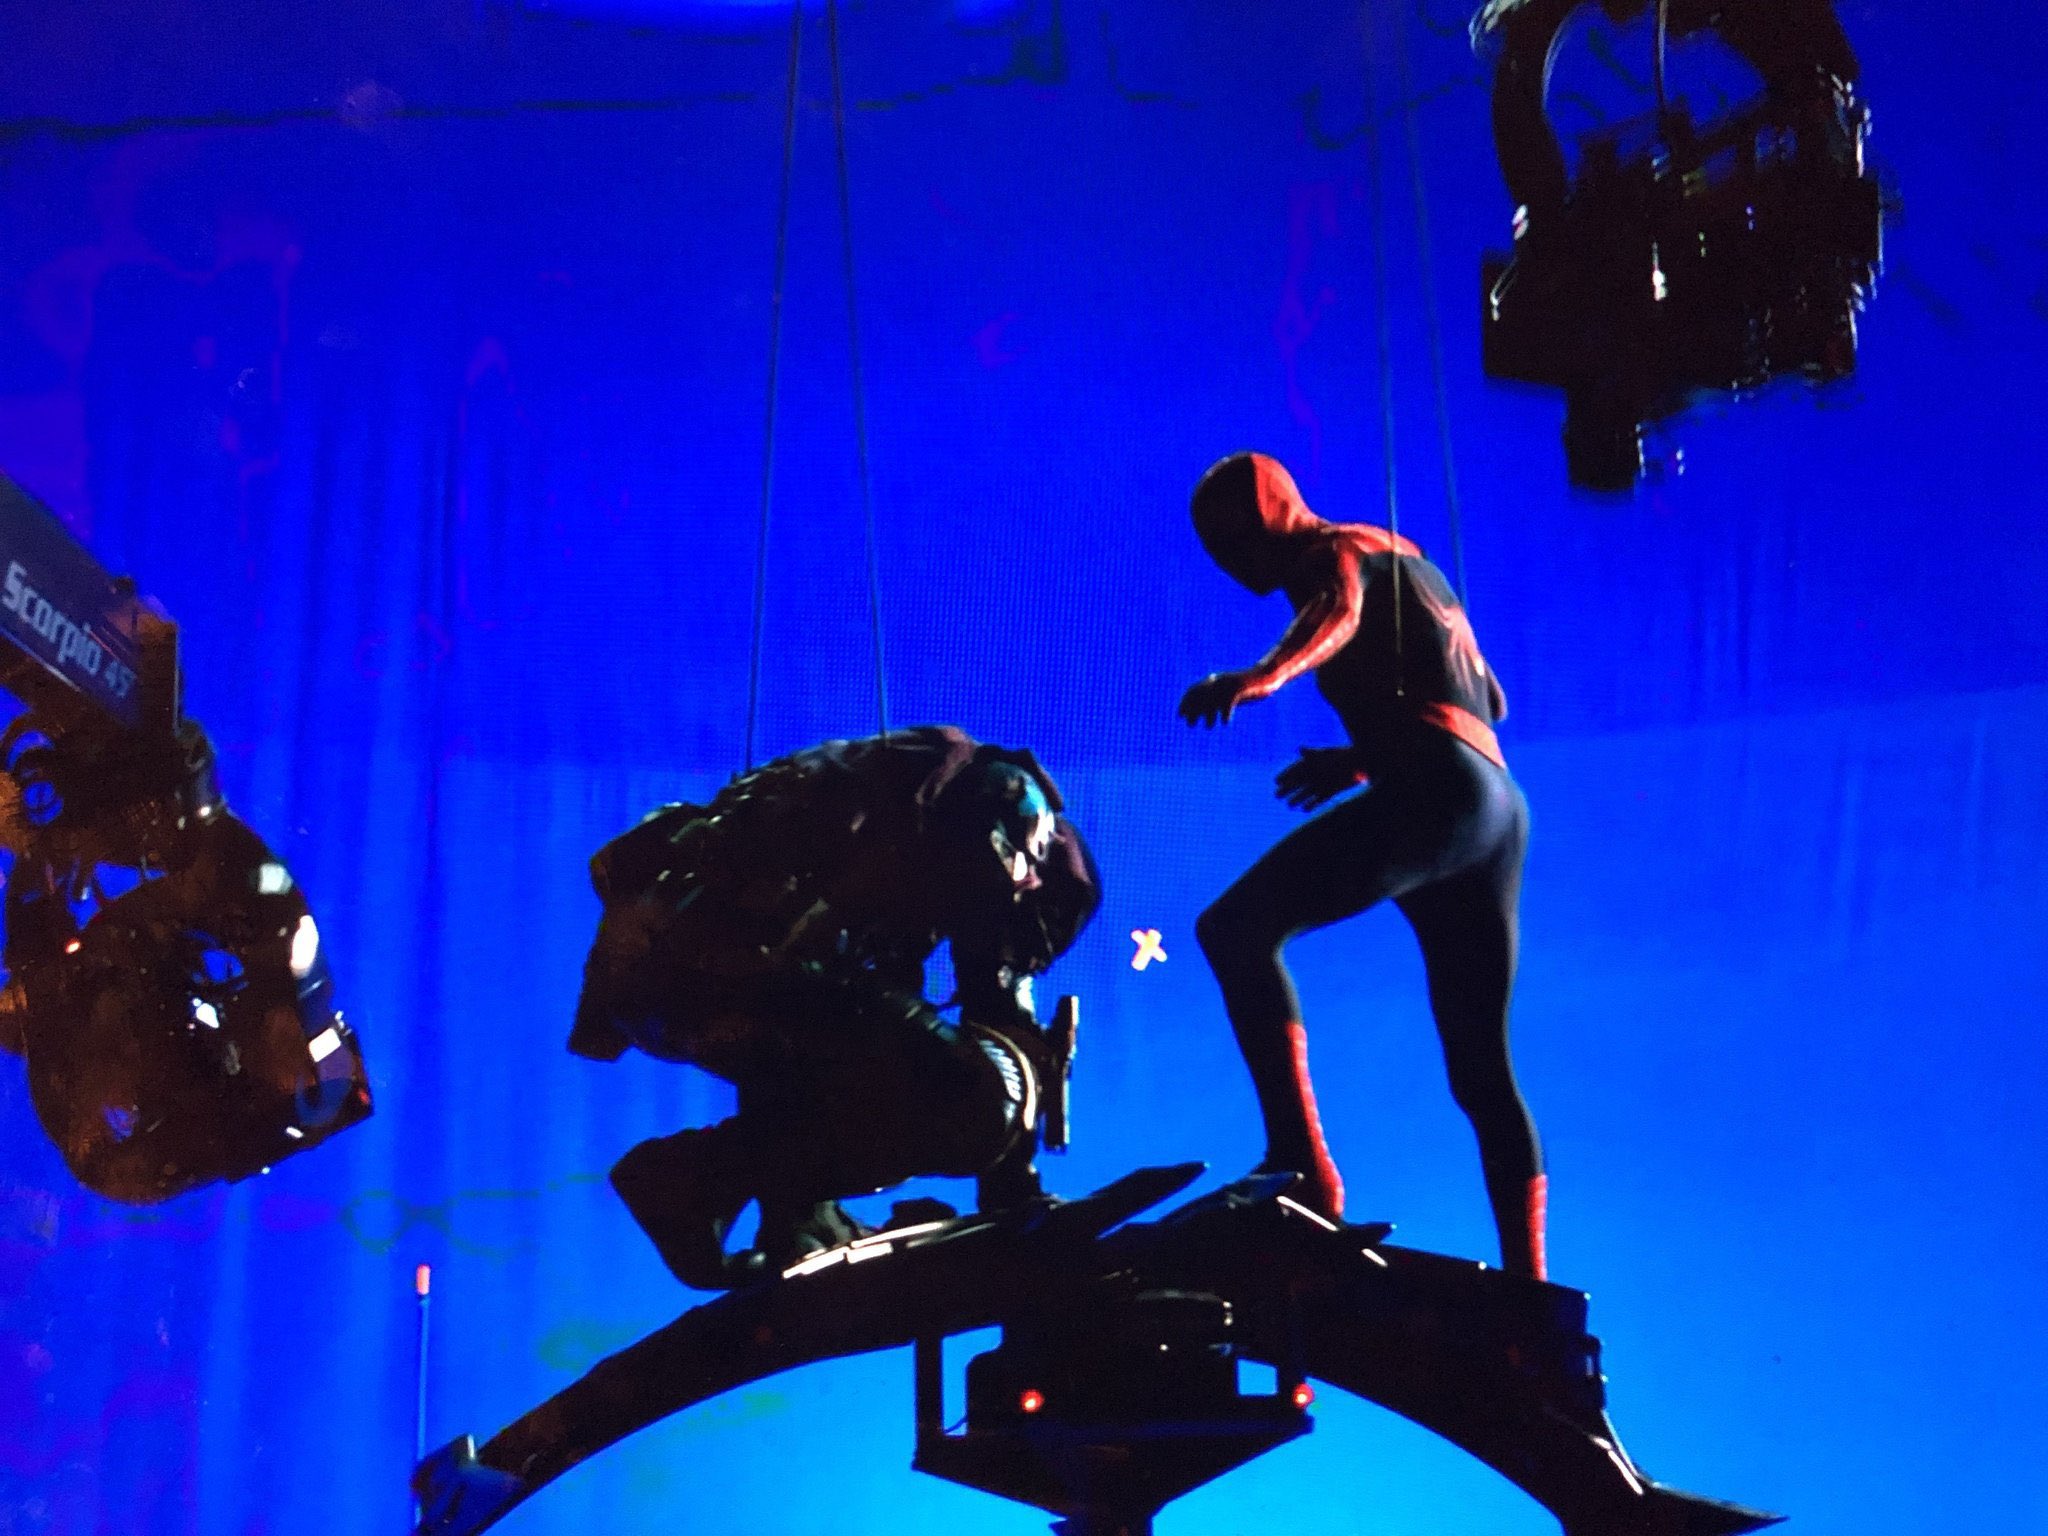 Тоби Магуайр сразился с Дефо в удаленной сцене «Человека-паука: Нет пути домой»